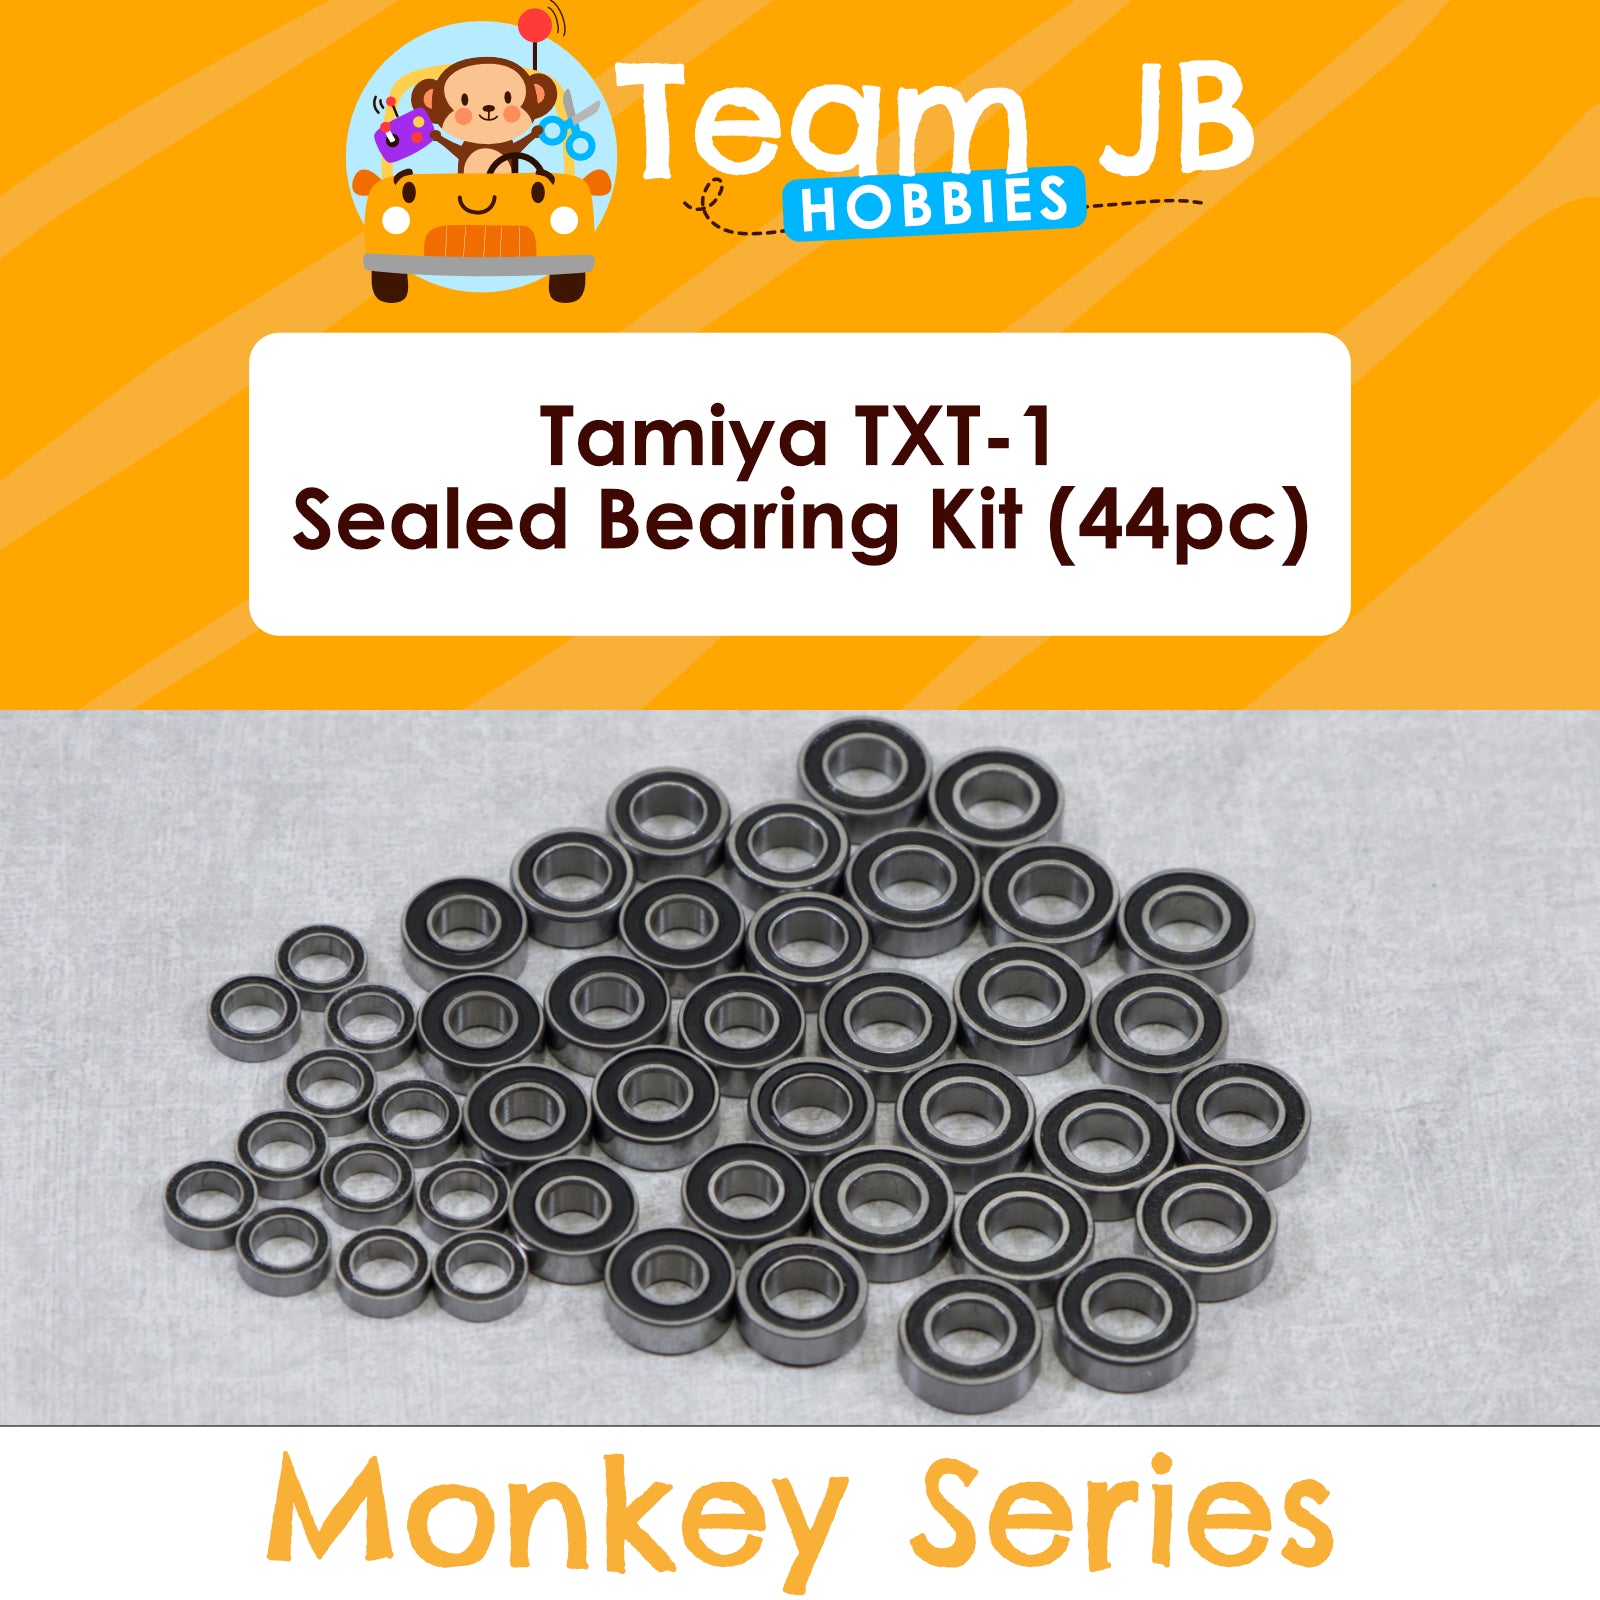 Tamiya TXT-1 - Sealed Bearing Kit